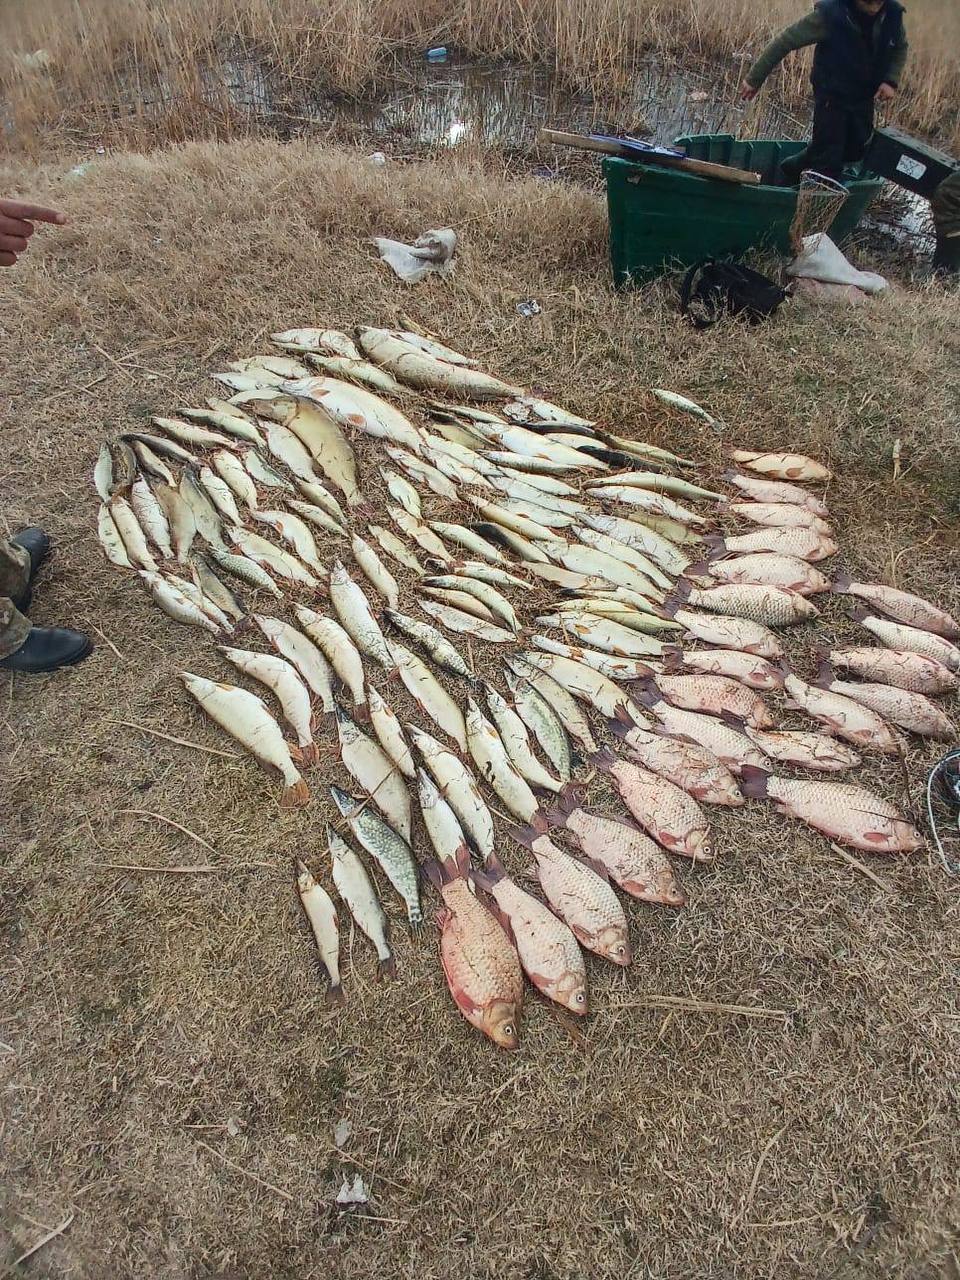 Майже чотири мільйони гривень збитків завдано рибному господарству на Одещині лише за І квартал